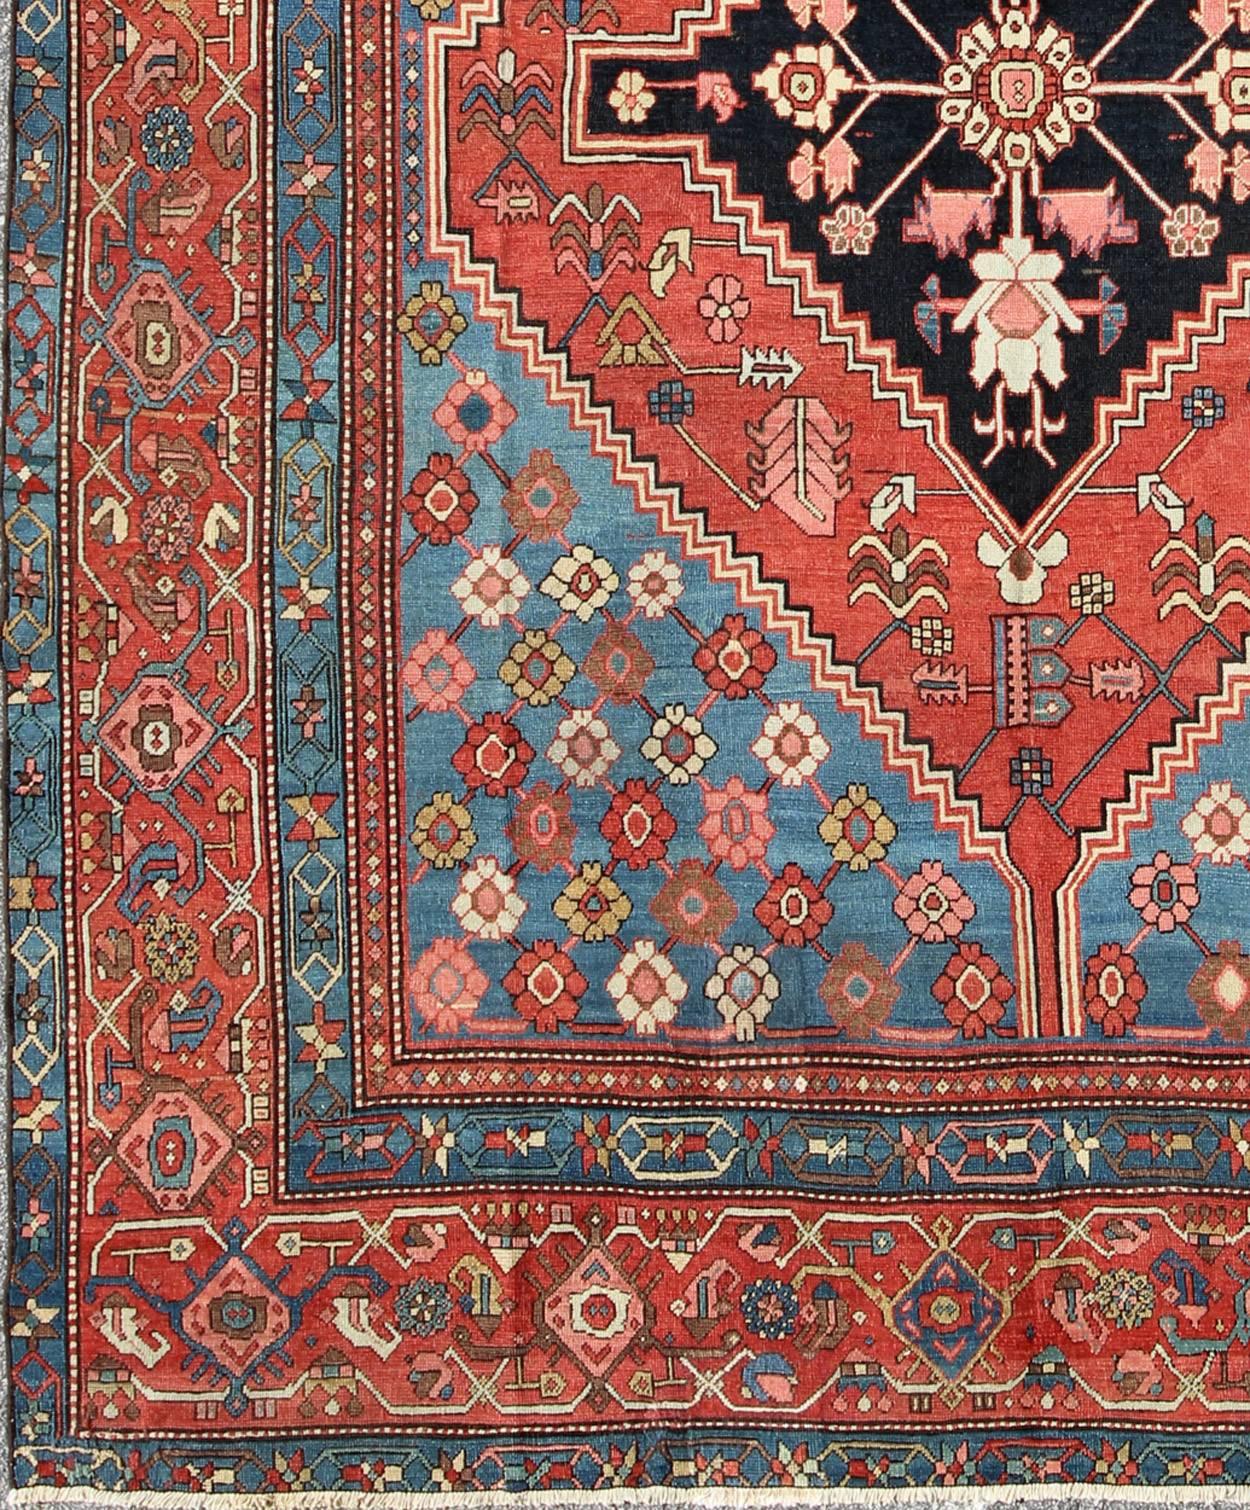 Antiker persischer Bakhshaish Teppich mit einzigartigem geometrischen Medaillon und Muster, Teppich / 10-KE-319, spätes 19. Jahrhundert Persischer Bakhshaish, Antiker Serapi.
Dieser hervorragende antike Bakschaisch-Teppich wurde im Nordwesten